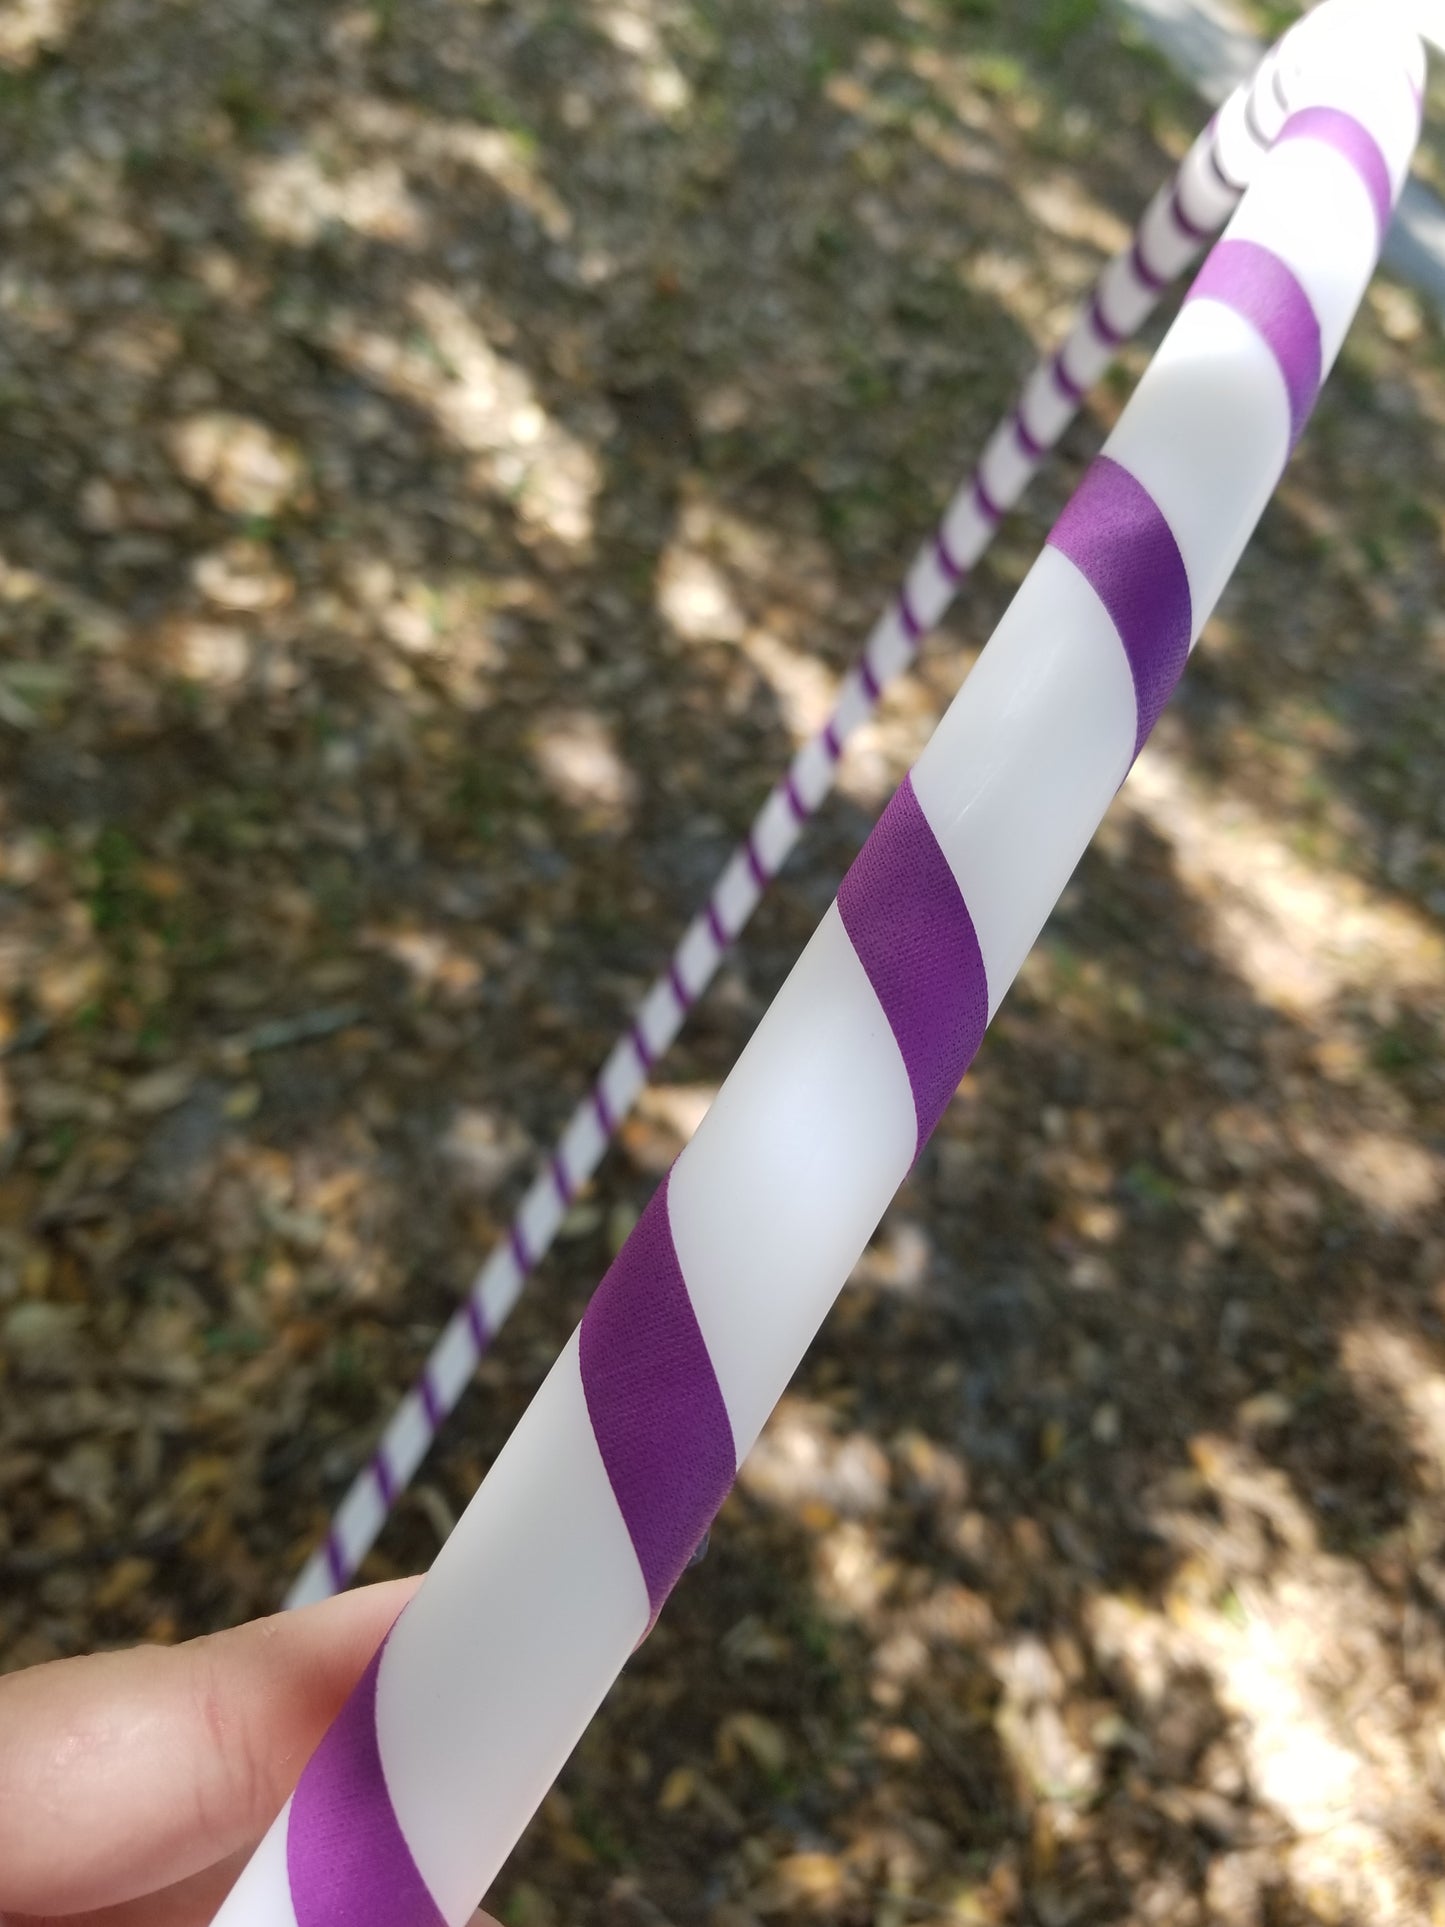 Purple Gaffer Spiral Budget Friendly Beginner HDPE Taped Hoop